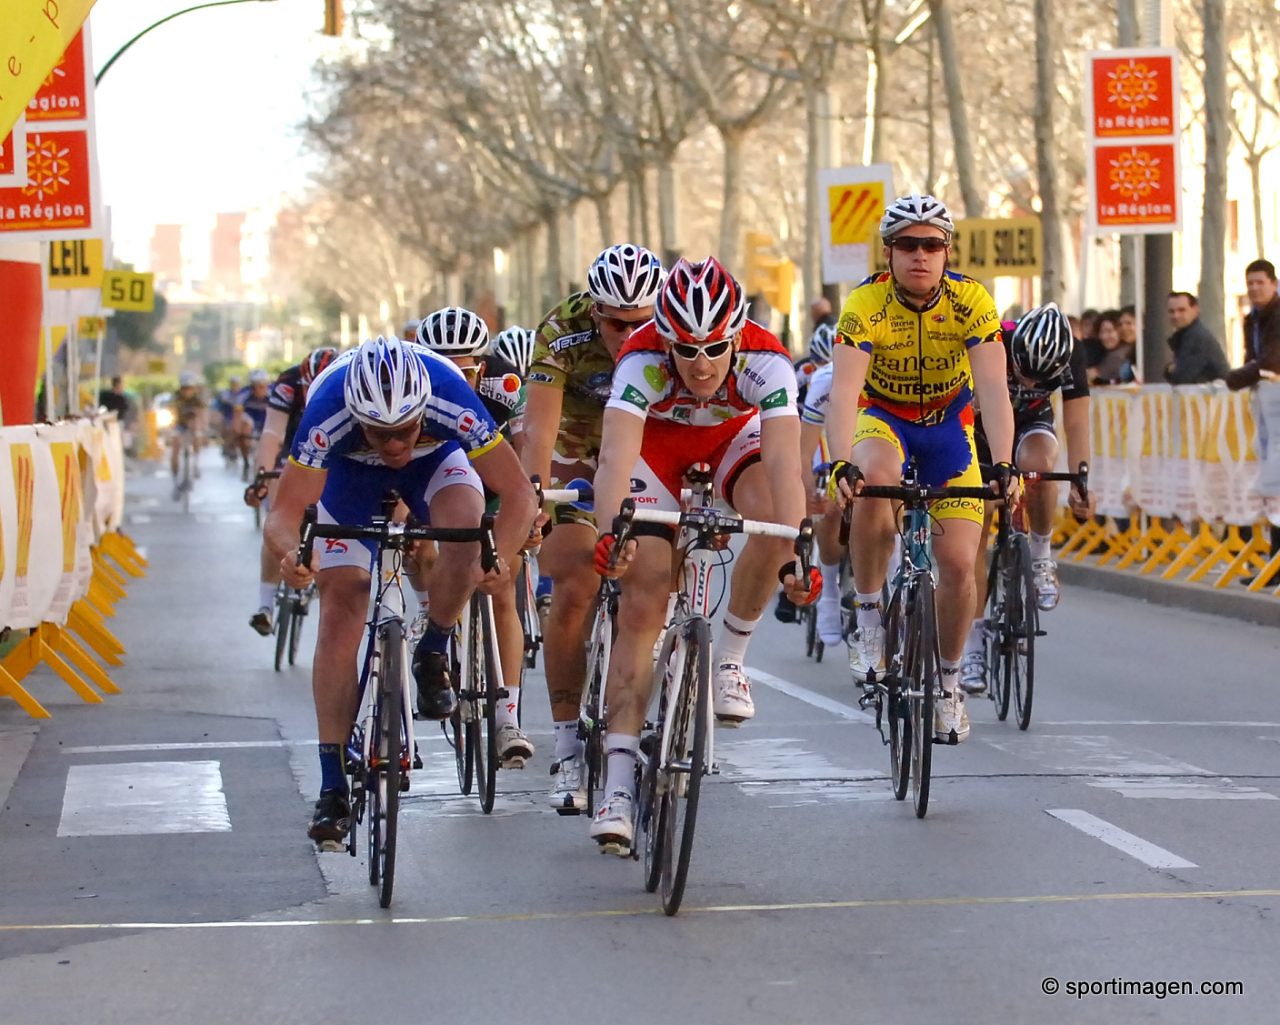 Boucles Catalanes : Demare au sprint, Gonnet 3e